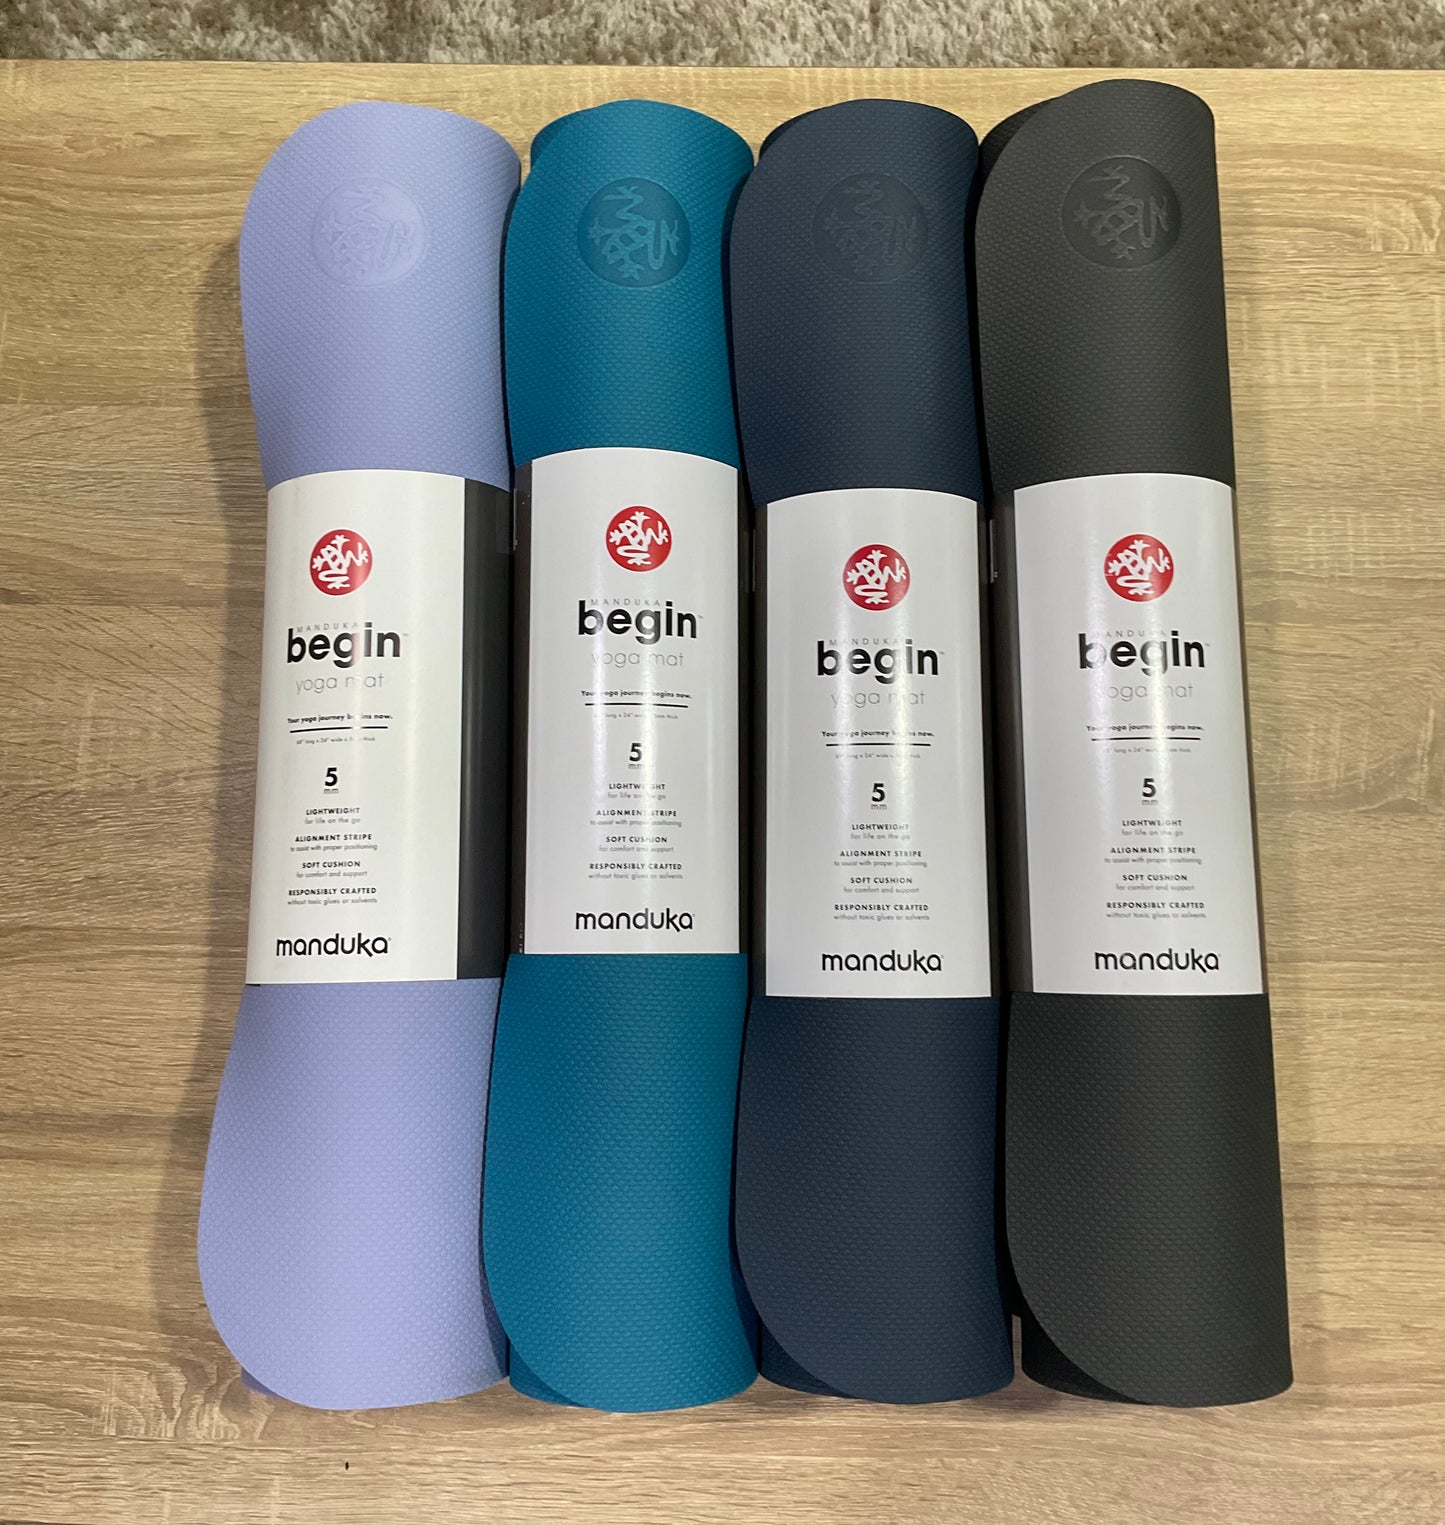 Manduka Begin Yoga Mat 5mm - Gambar Lavender